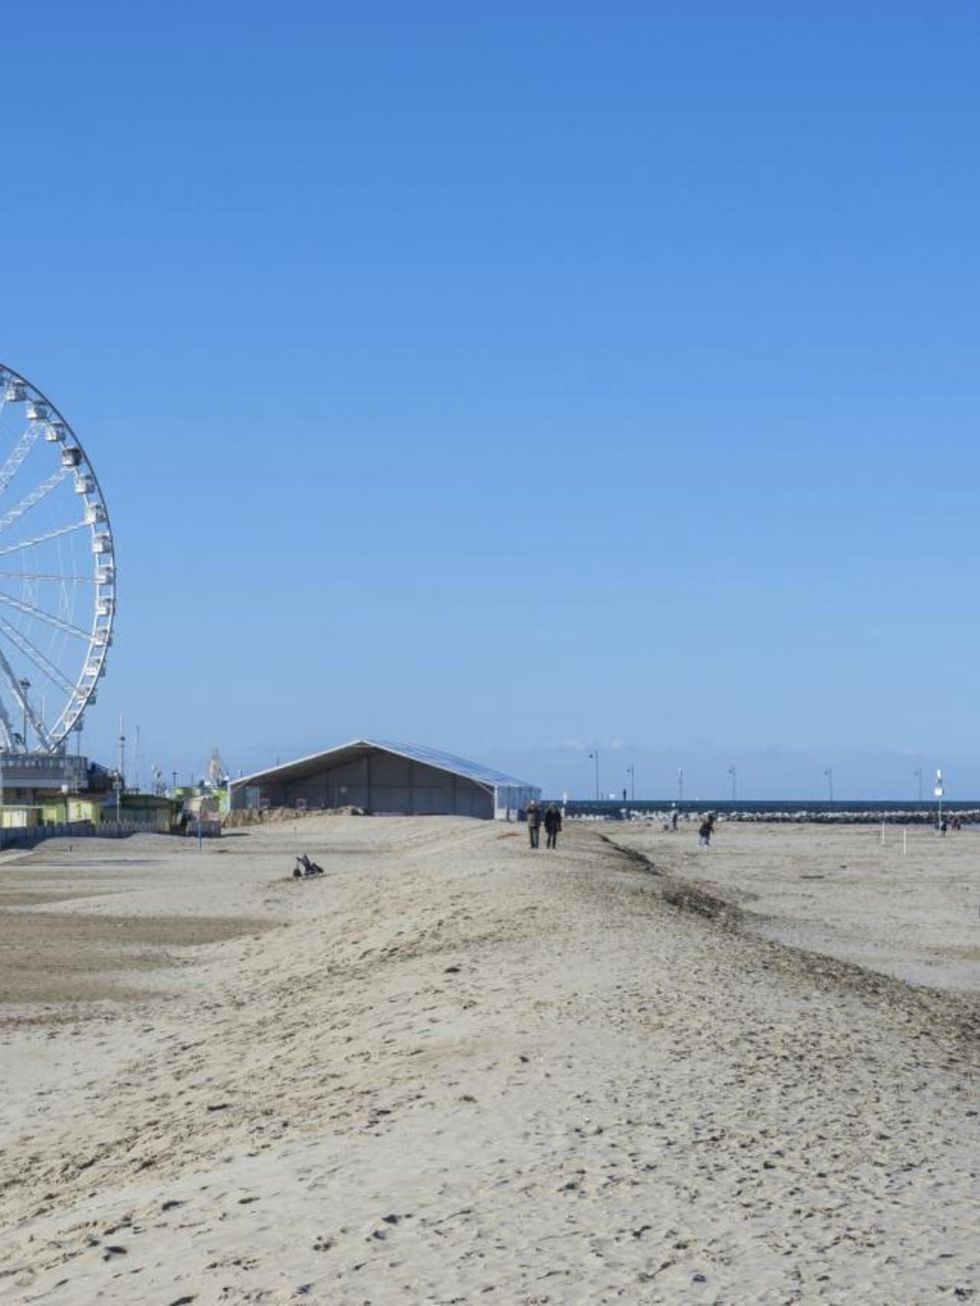 Ferris wheel, Sand, Shore, Amusement ride, Coast, Amusement park, Beach, Tourist attraction, Nonbuilding structure, Spoke, 